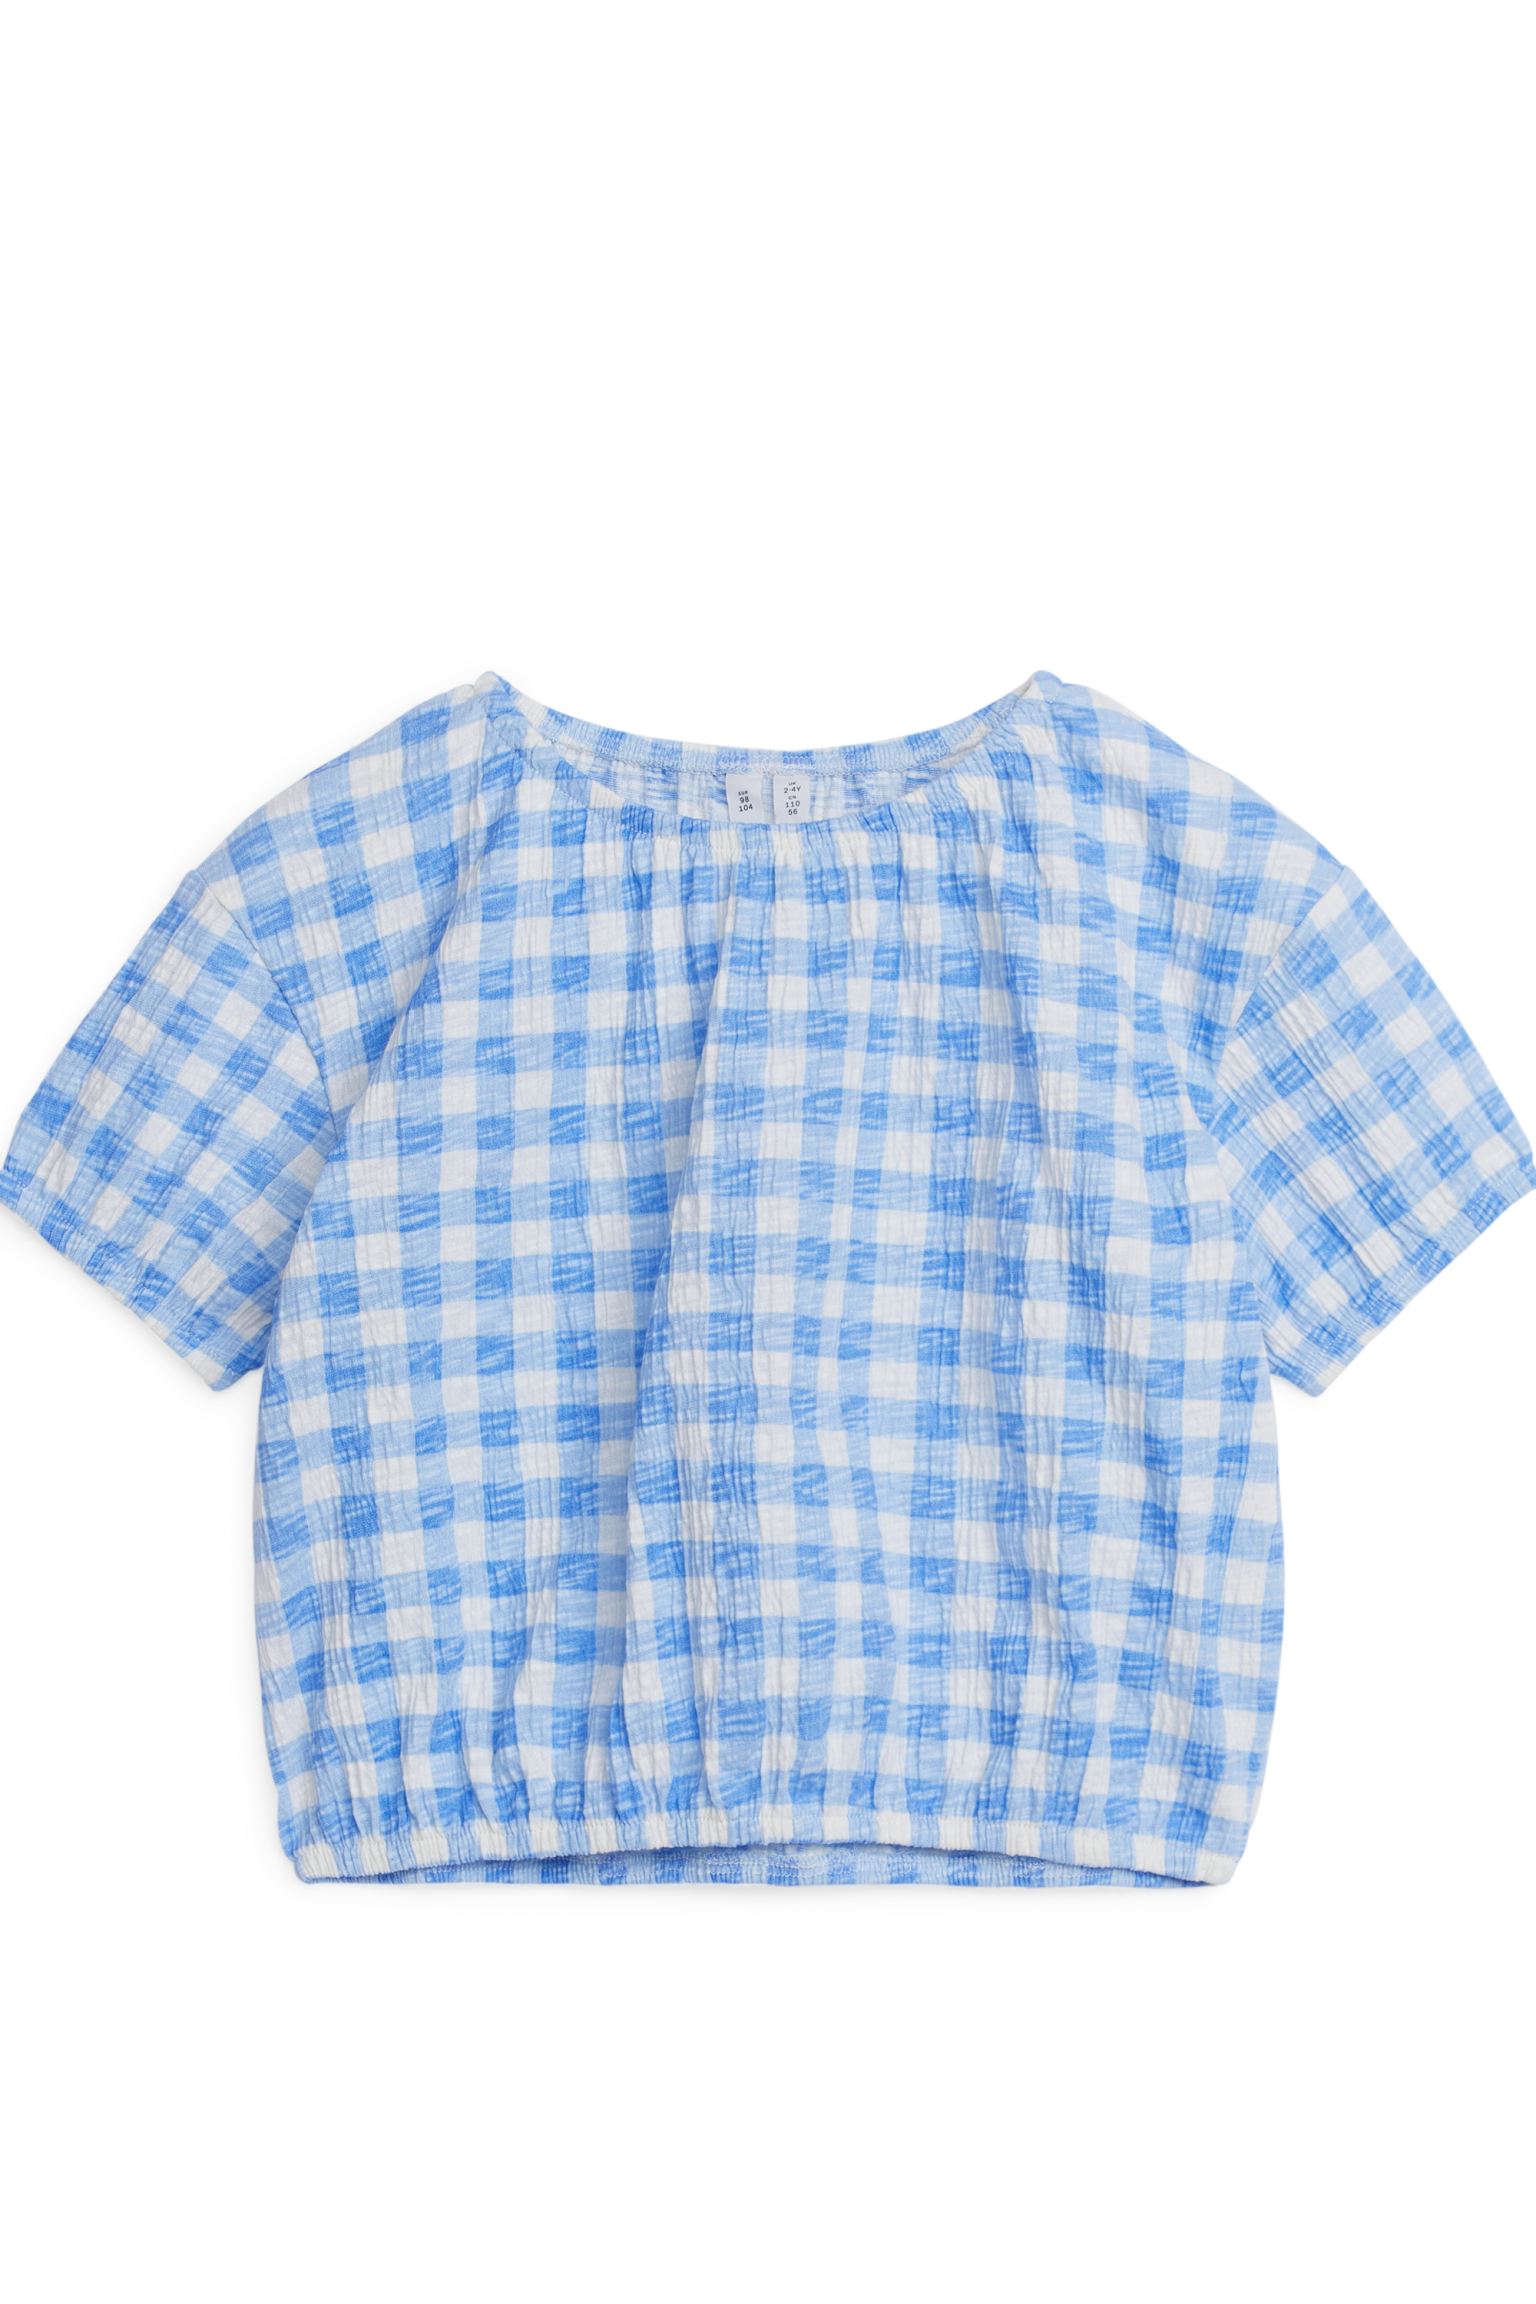 Структурированная блузка ARKET для девочек 98/104 Белый синий (доставка из-за рубежа)